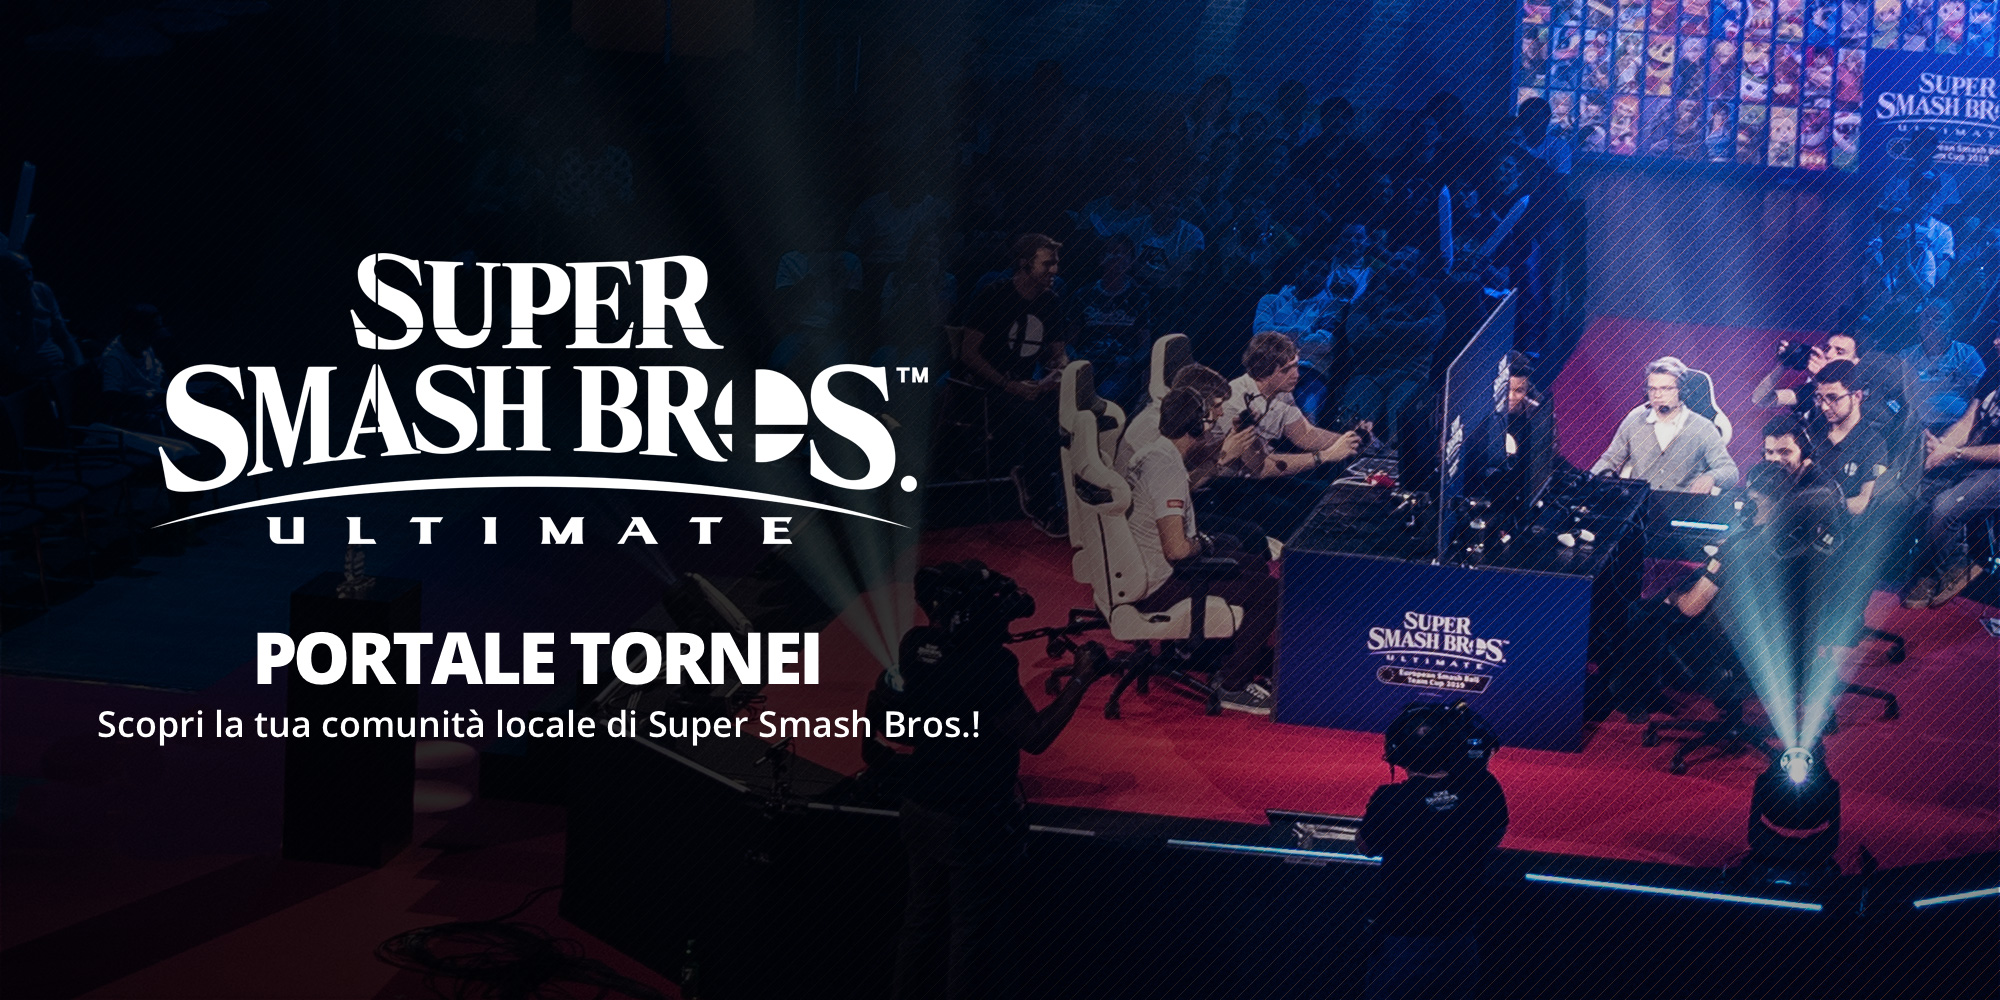 Trova la tua comunità locale di Smash Bros. con il Portale tornei di Super Smash Bros. Ultimate!